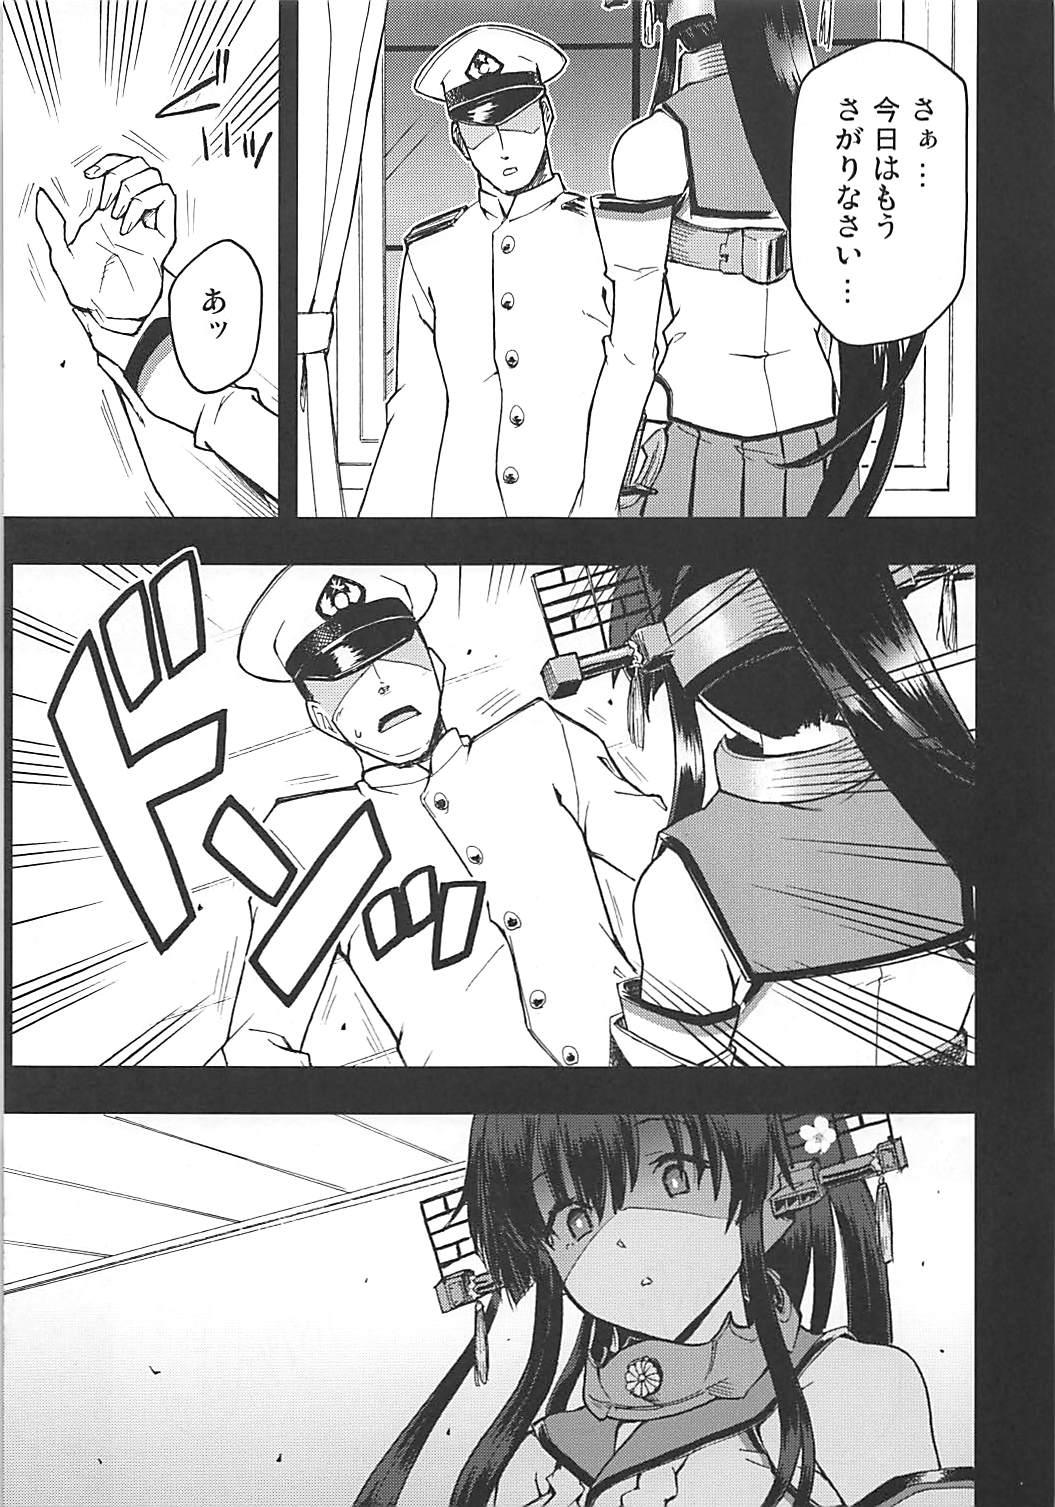 Small Tits Porn Shikishima no Yamato-gokoro o Hito Towaba... - Kantai collection Teenporno - Page 6